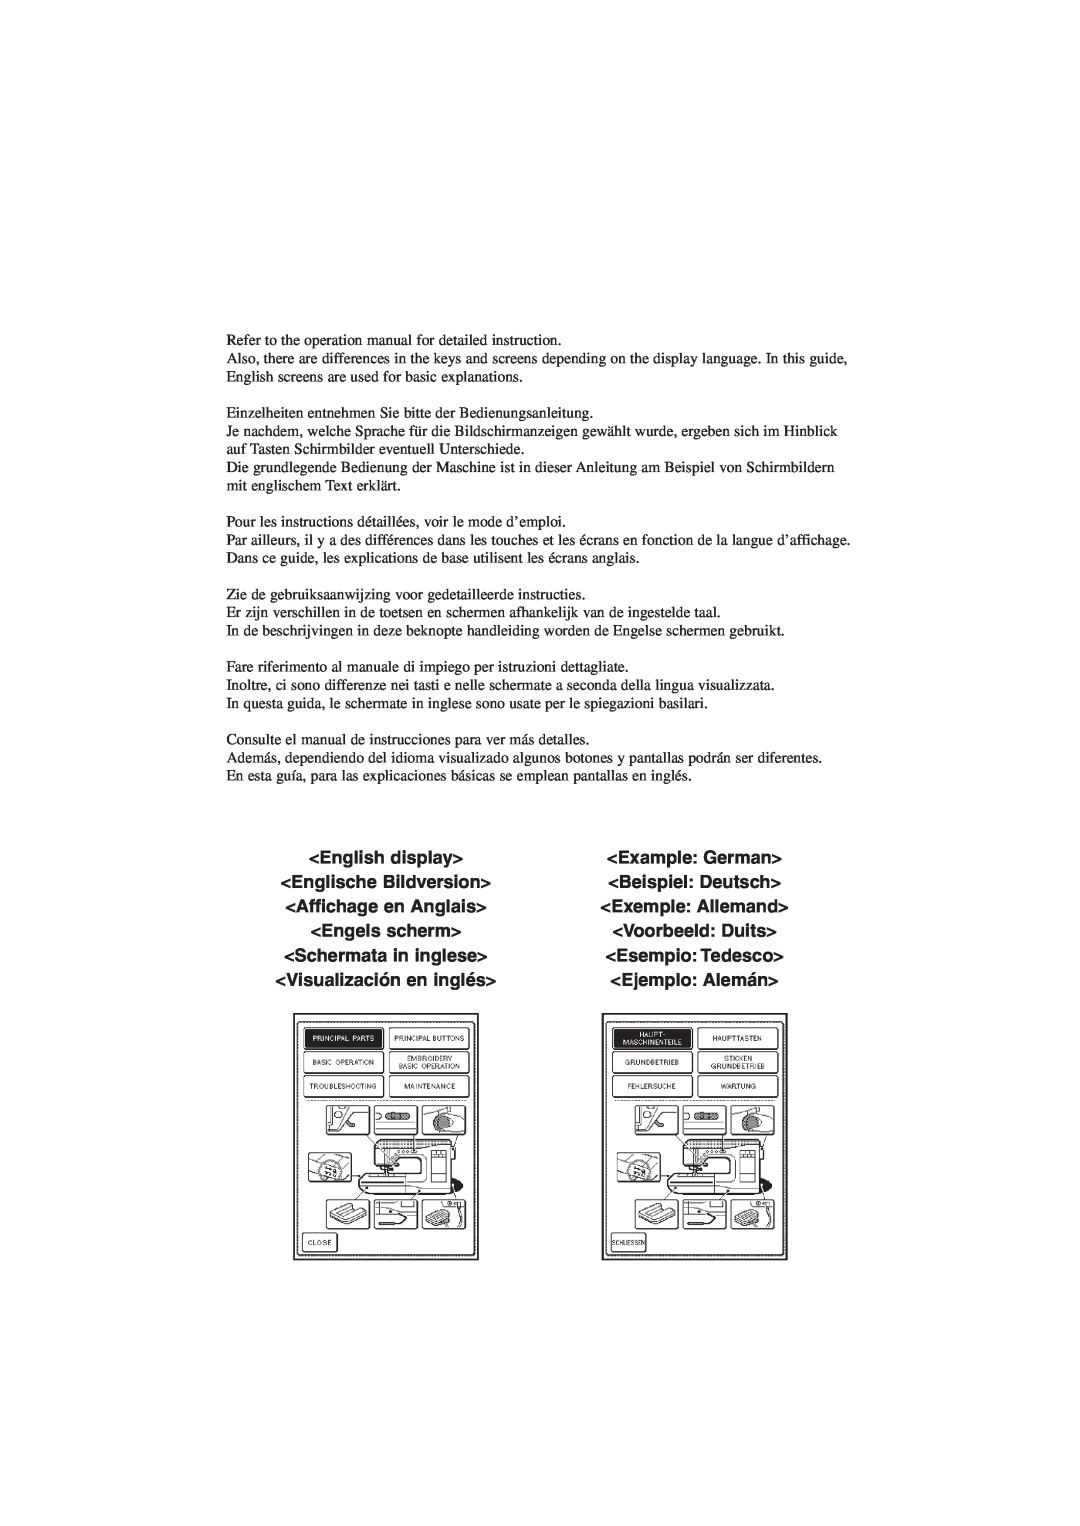 Brother XD0556-051 manual English display, Englische Bildversion, Beispiel Deutsch, Affichage en Anglais, Engels scherm 